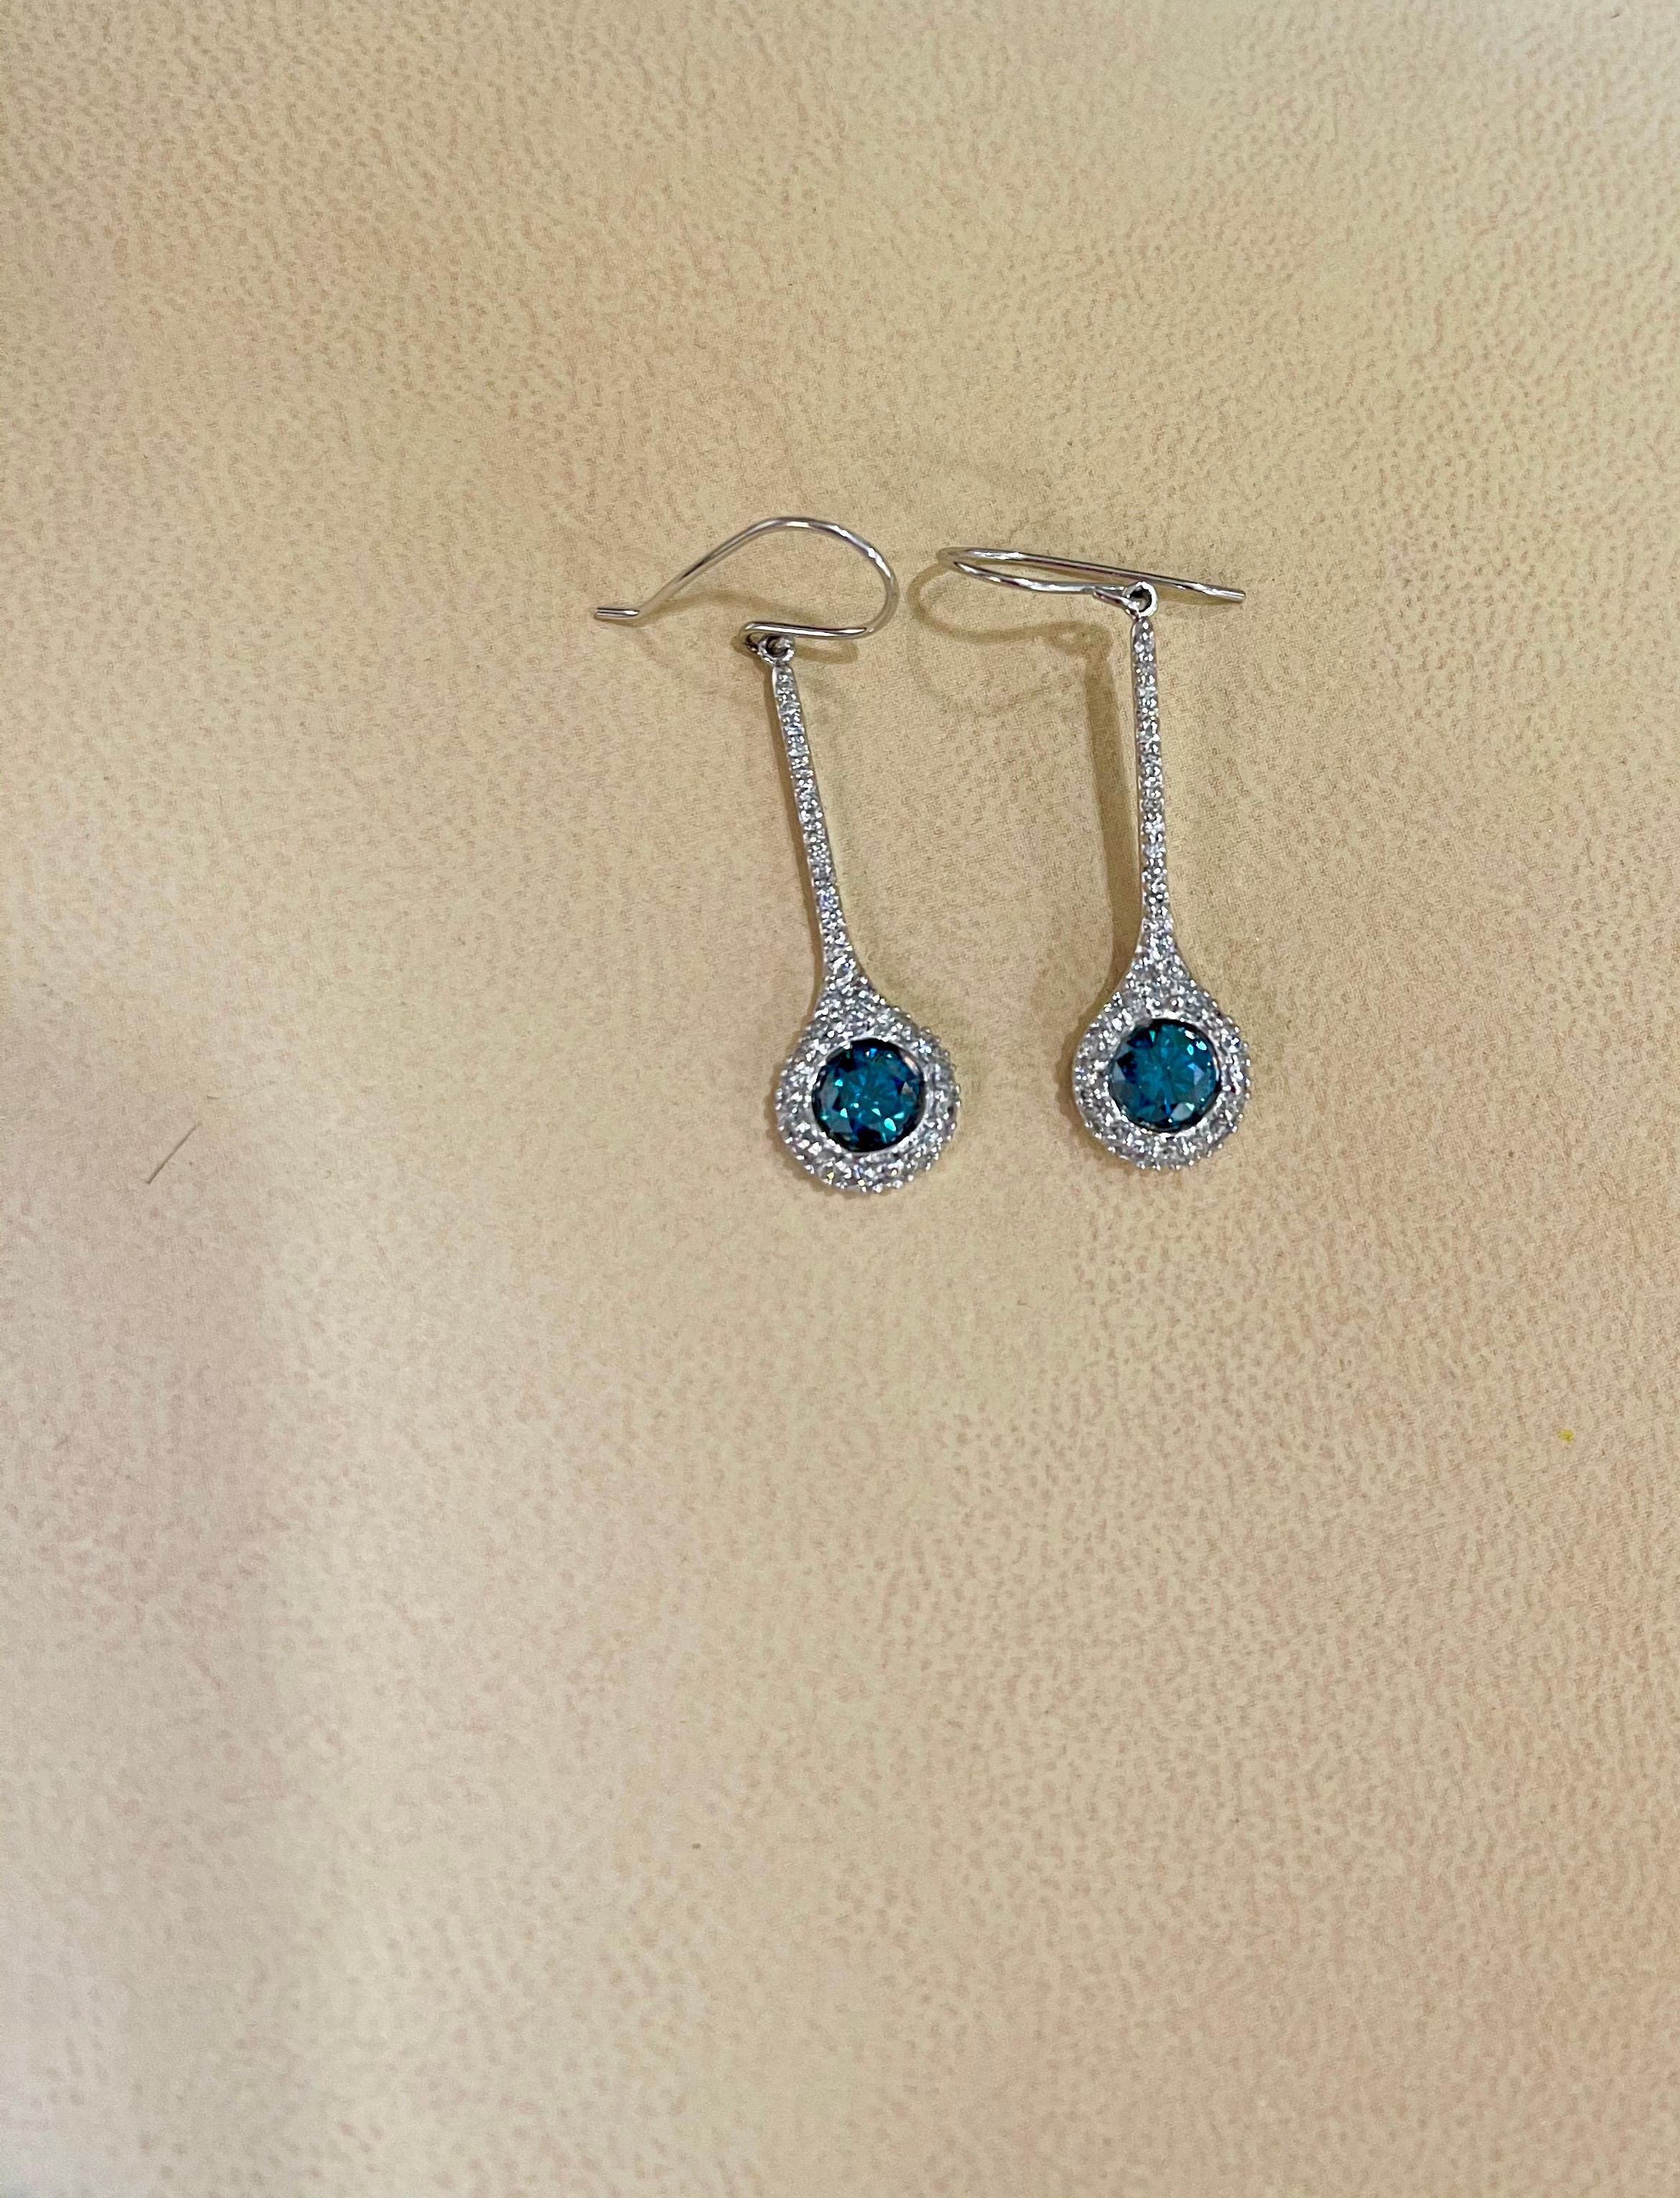 Designer Effy's 1.57 Carat Blue & White Diamond Dangling Earrings 14K White Gold 6